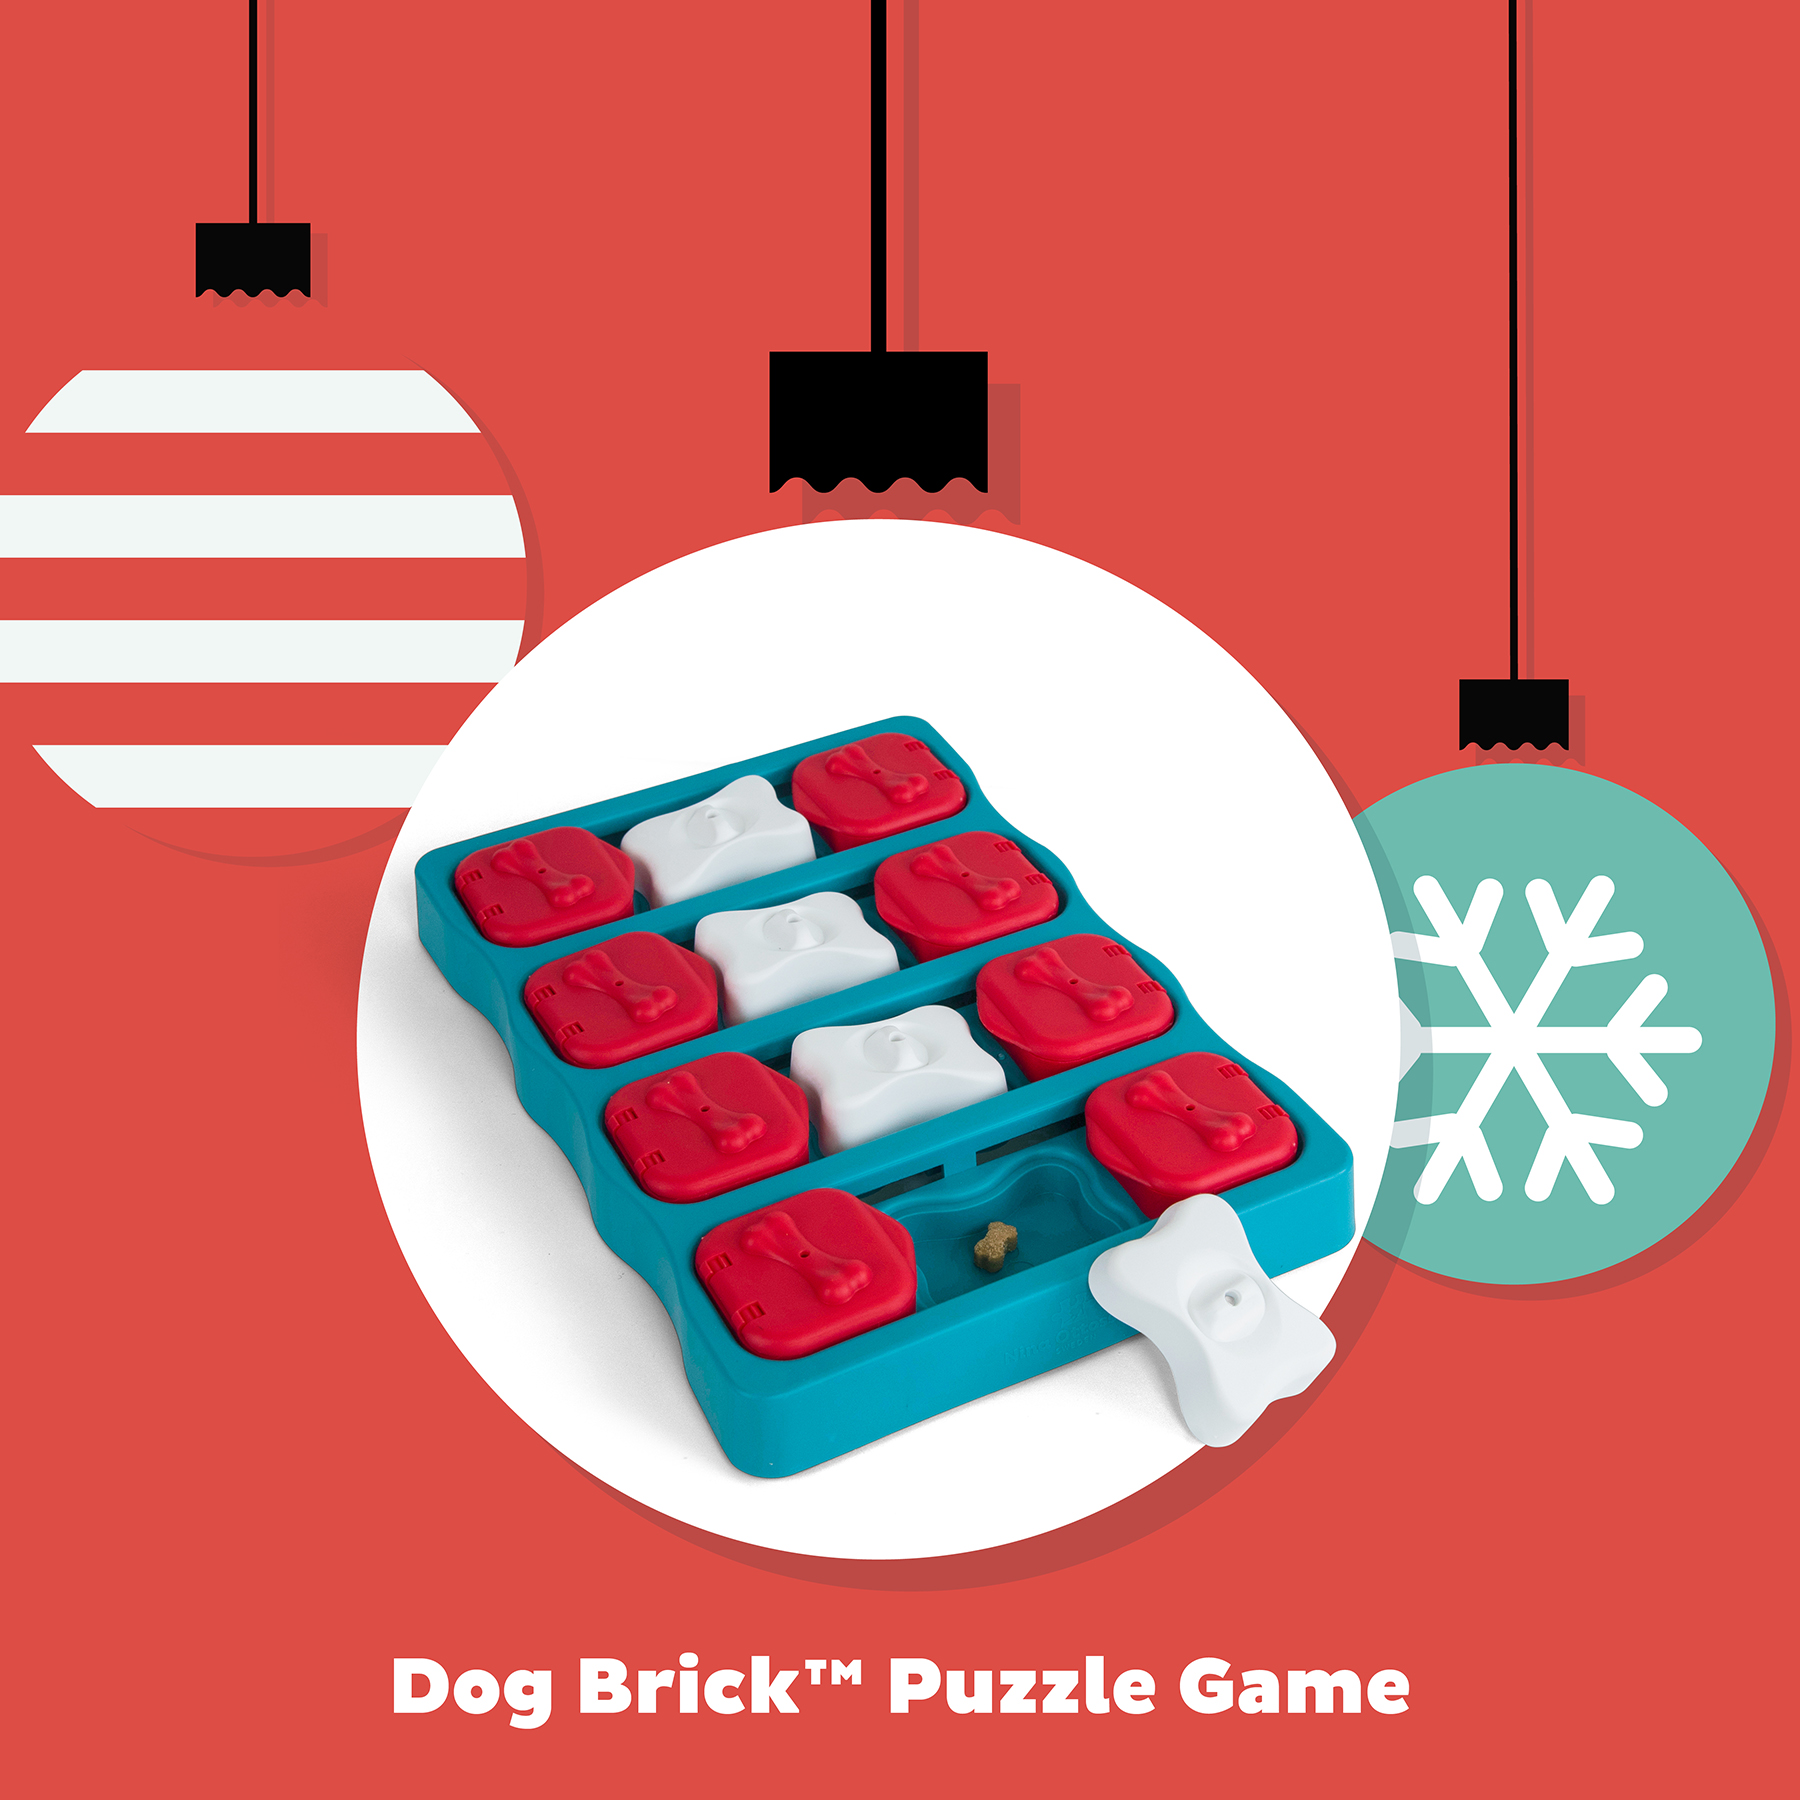 Outward Hound Nina Ottosson Brick Puzzle Enrichment Dog Toy, Medium